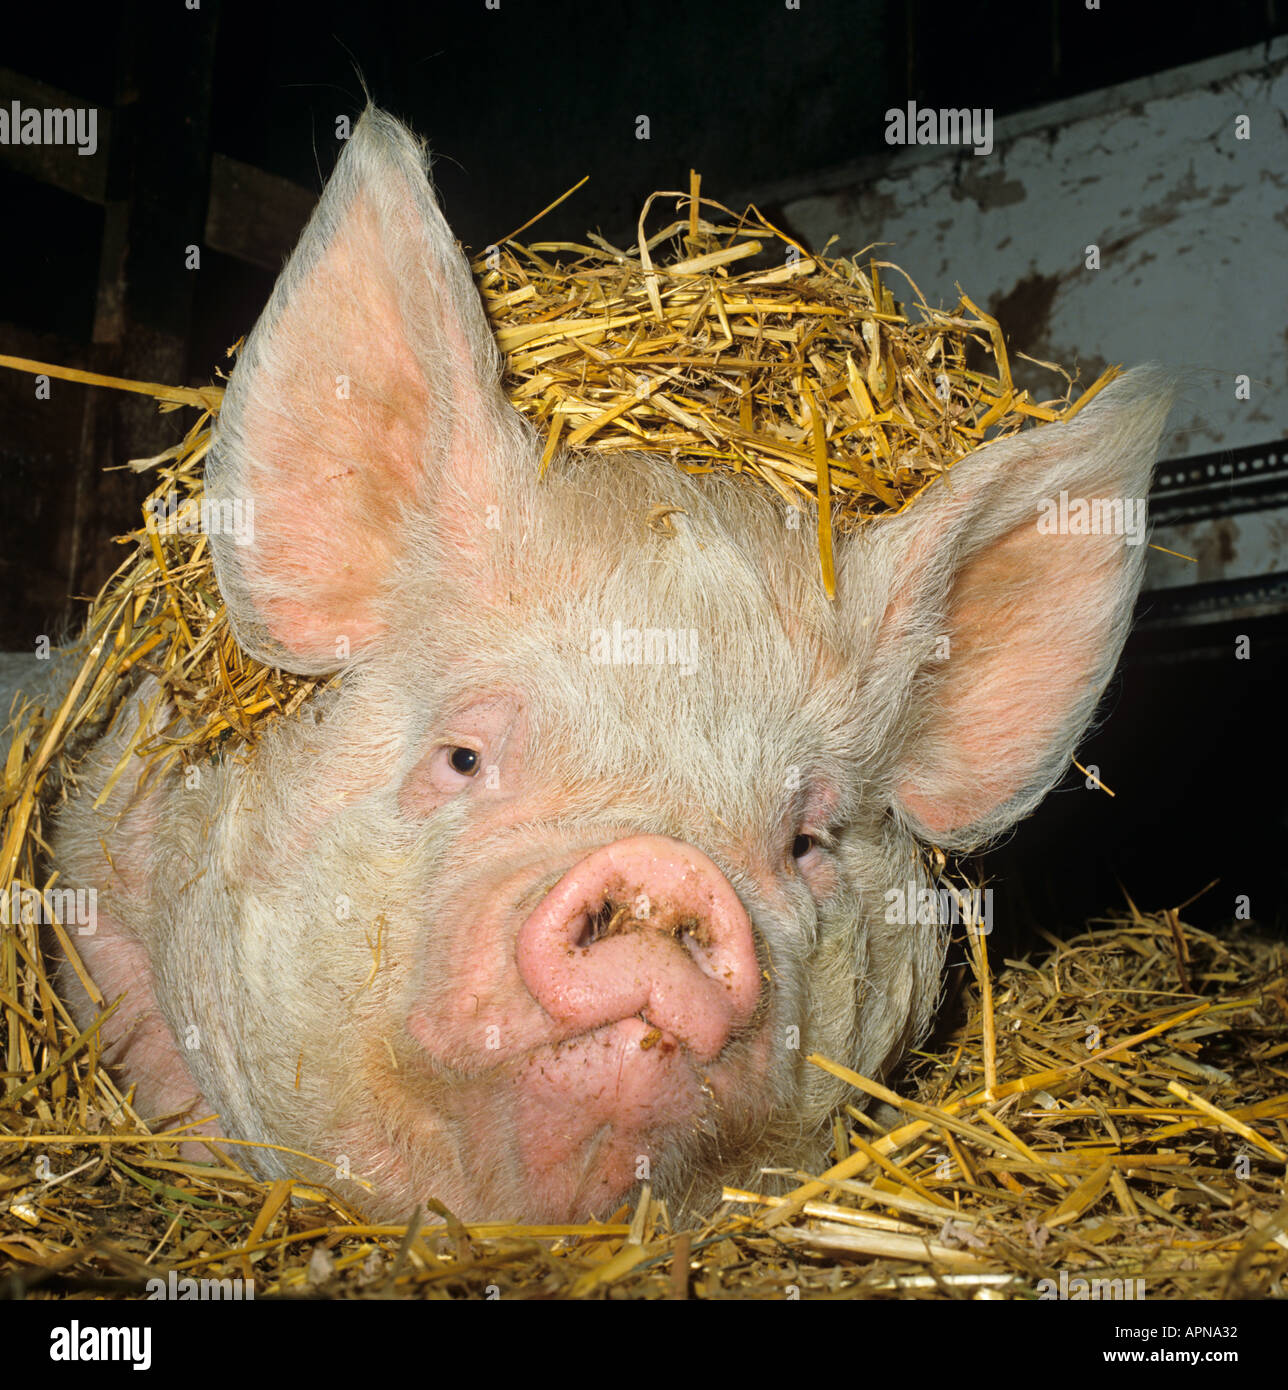 Middle white piglets fotografías e imágenes de alta resolución - Alamy